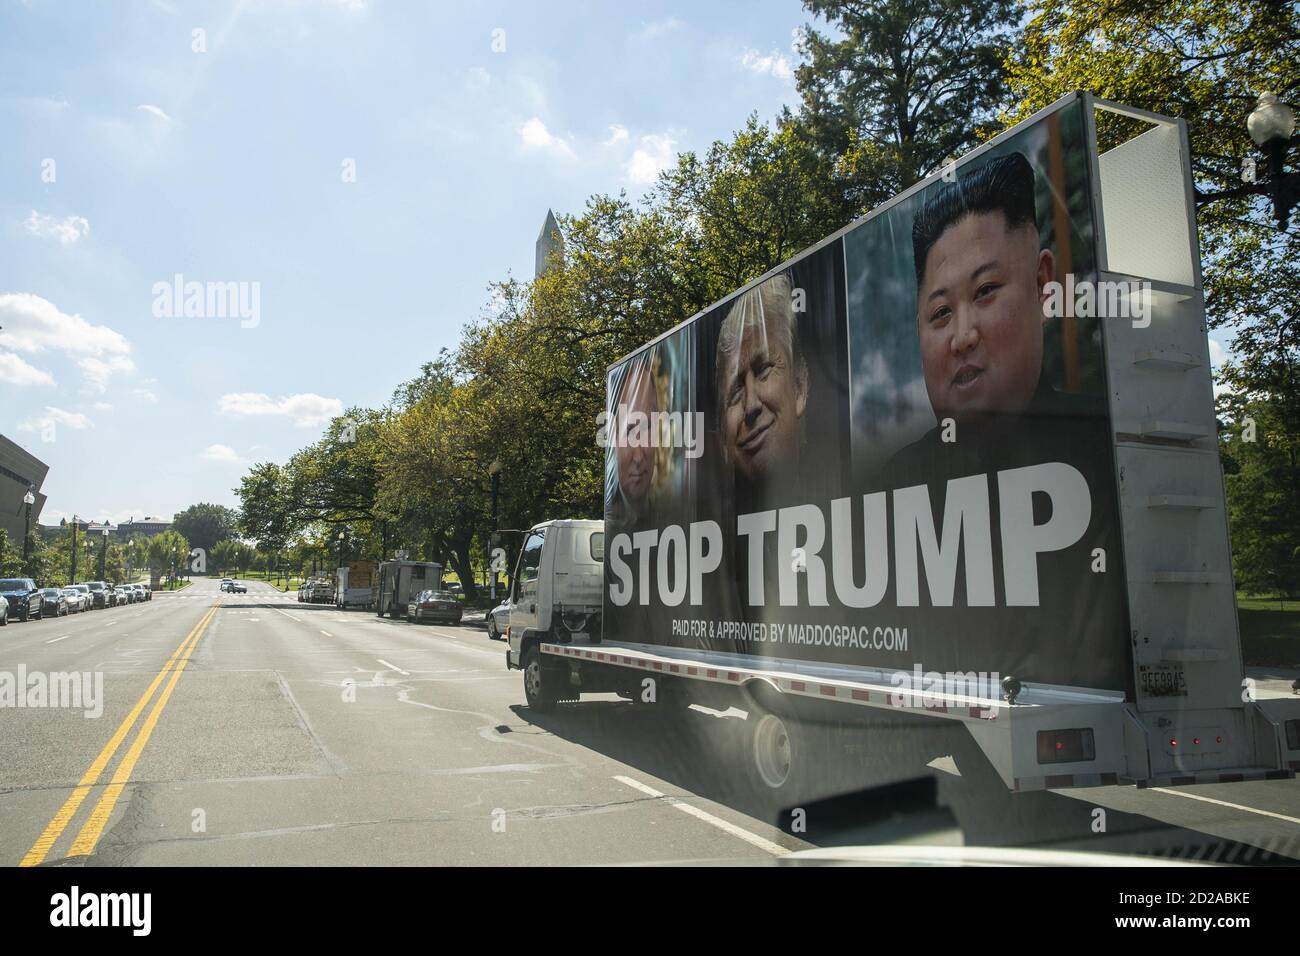 Washington, Usa. Oktober 2020. Ein LKW mit einer Plakatwand, die US-Präsident Donald Trump kritisiert, wird gesehen, wie er in der Nähe des Weißen Hauses in Washington, DC, USA, am Dienstag, 6. Oktober 2020 fährt. Foto von Sarah Silbiger/UPI Kredit: UPI/Alamy Live Nachrichten Stockfoto